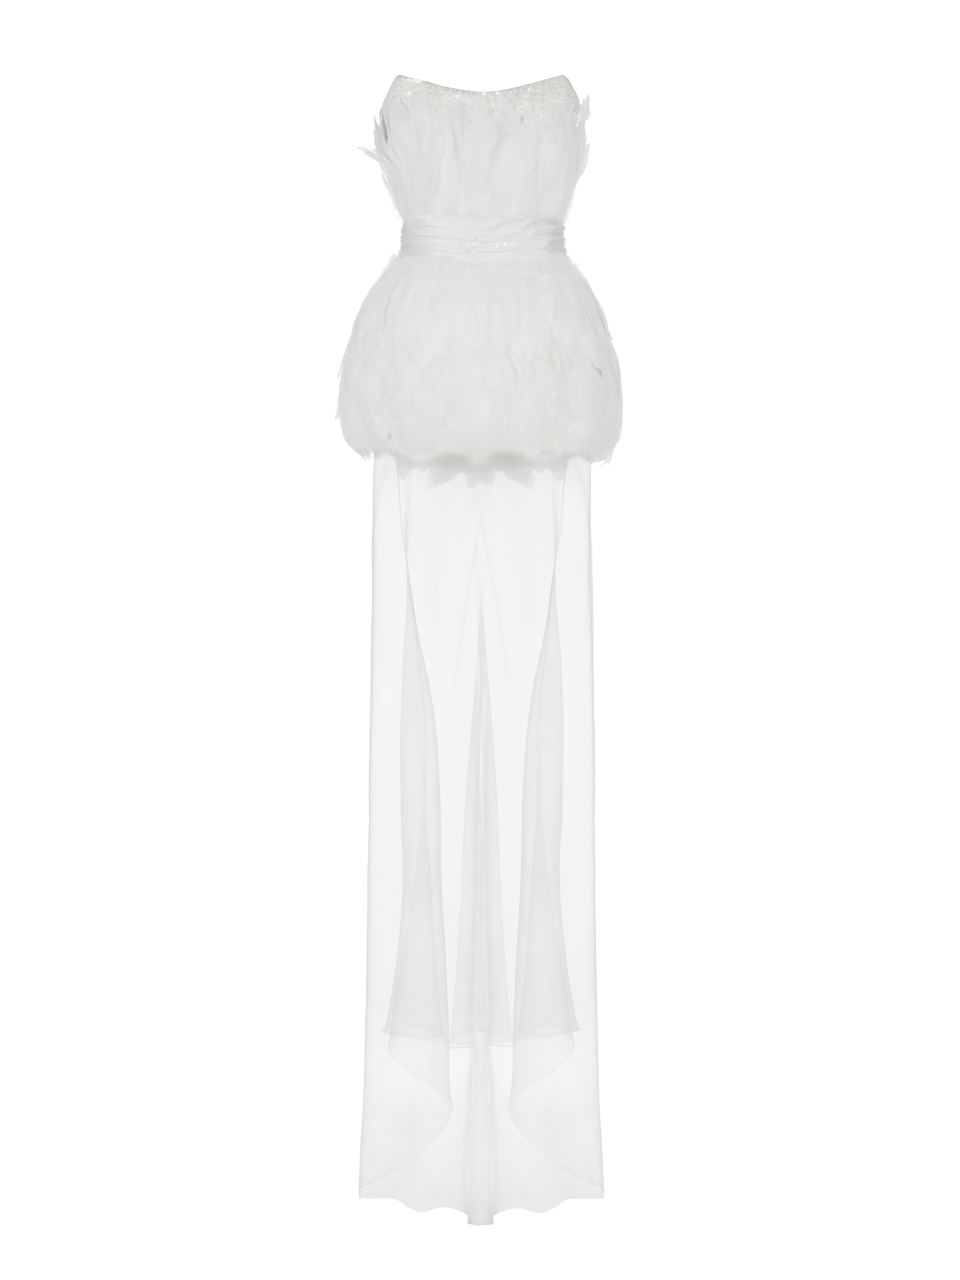 Белое платье-макси из шелка с отделкой из перьев, 1